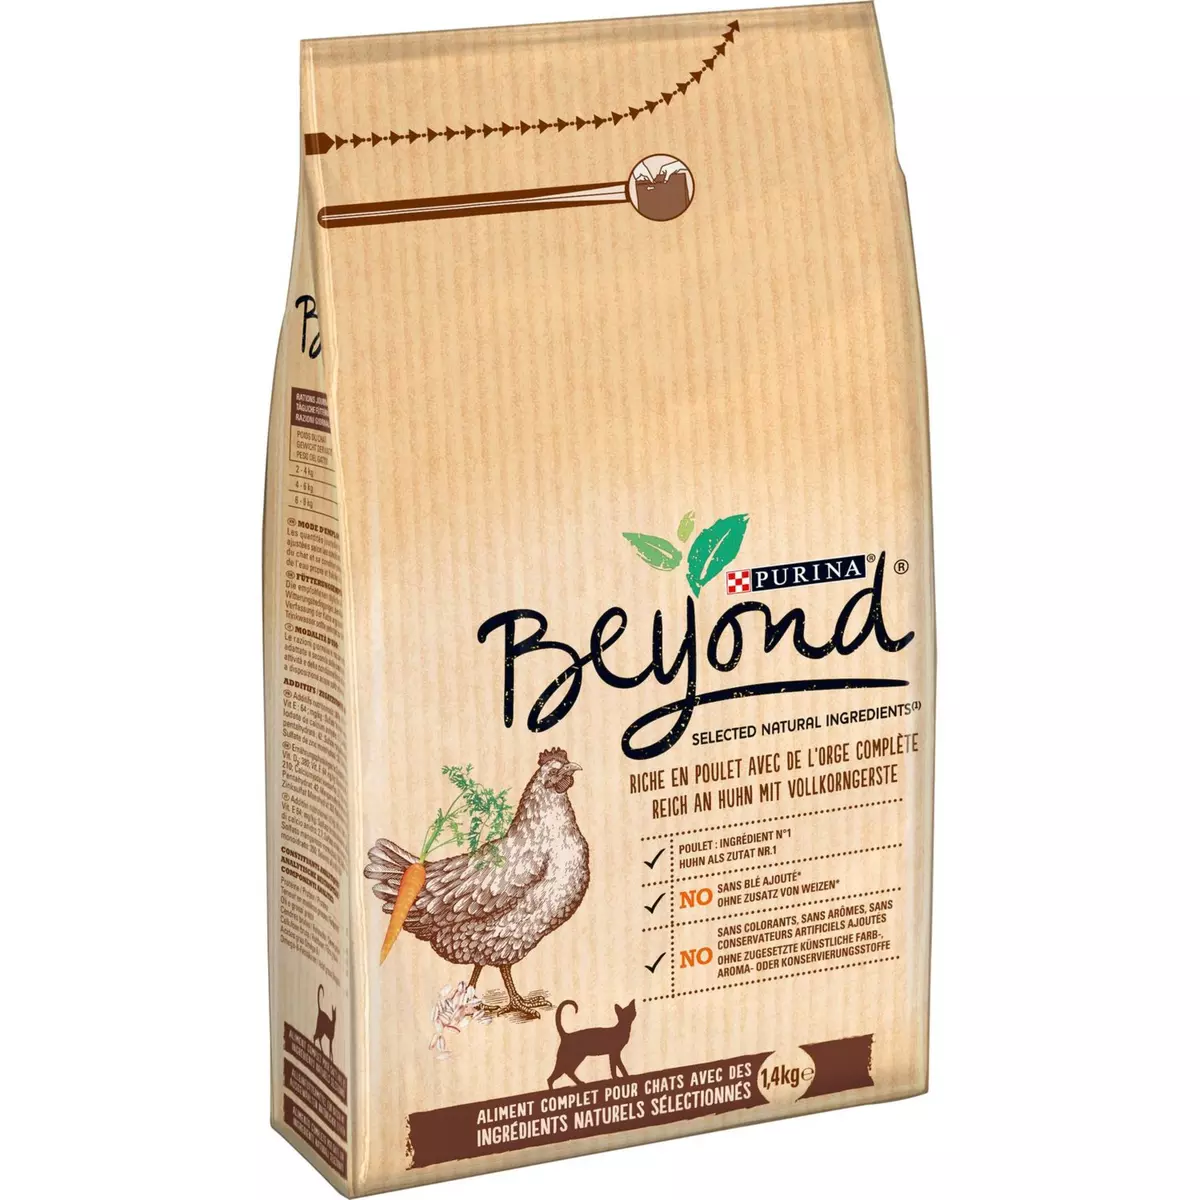 BEYOND Beyond croquettes pour chat au poulet 1,4kg